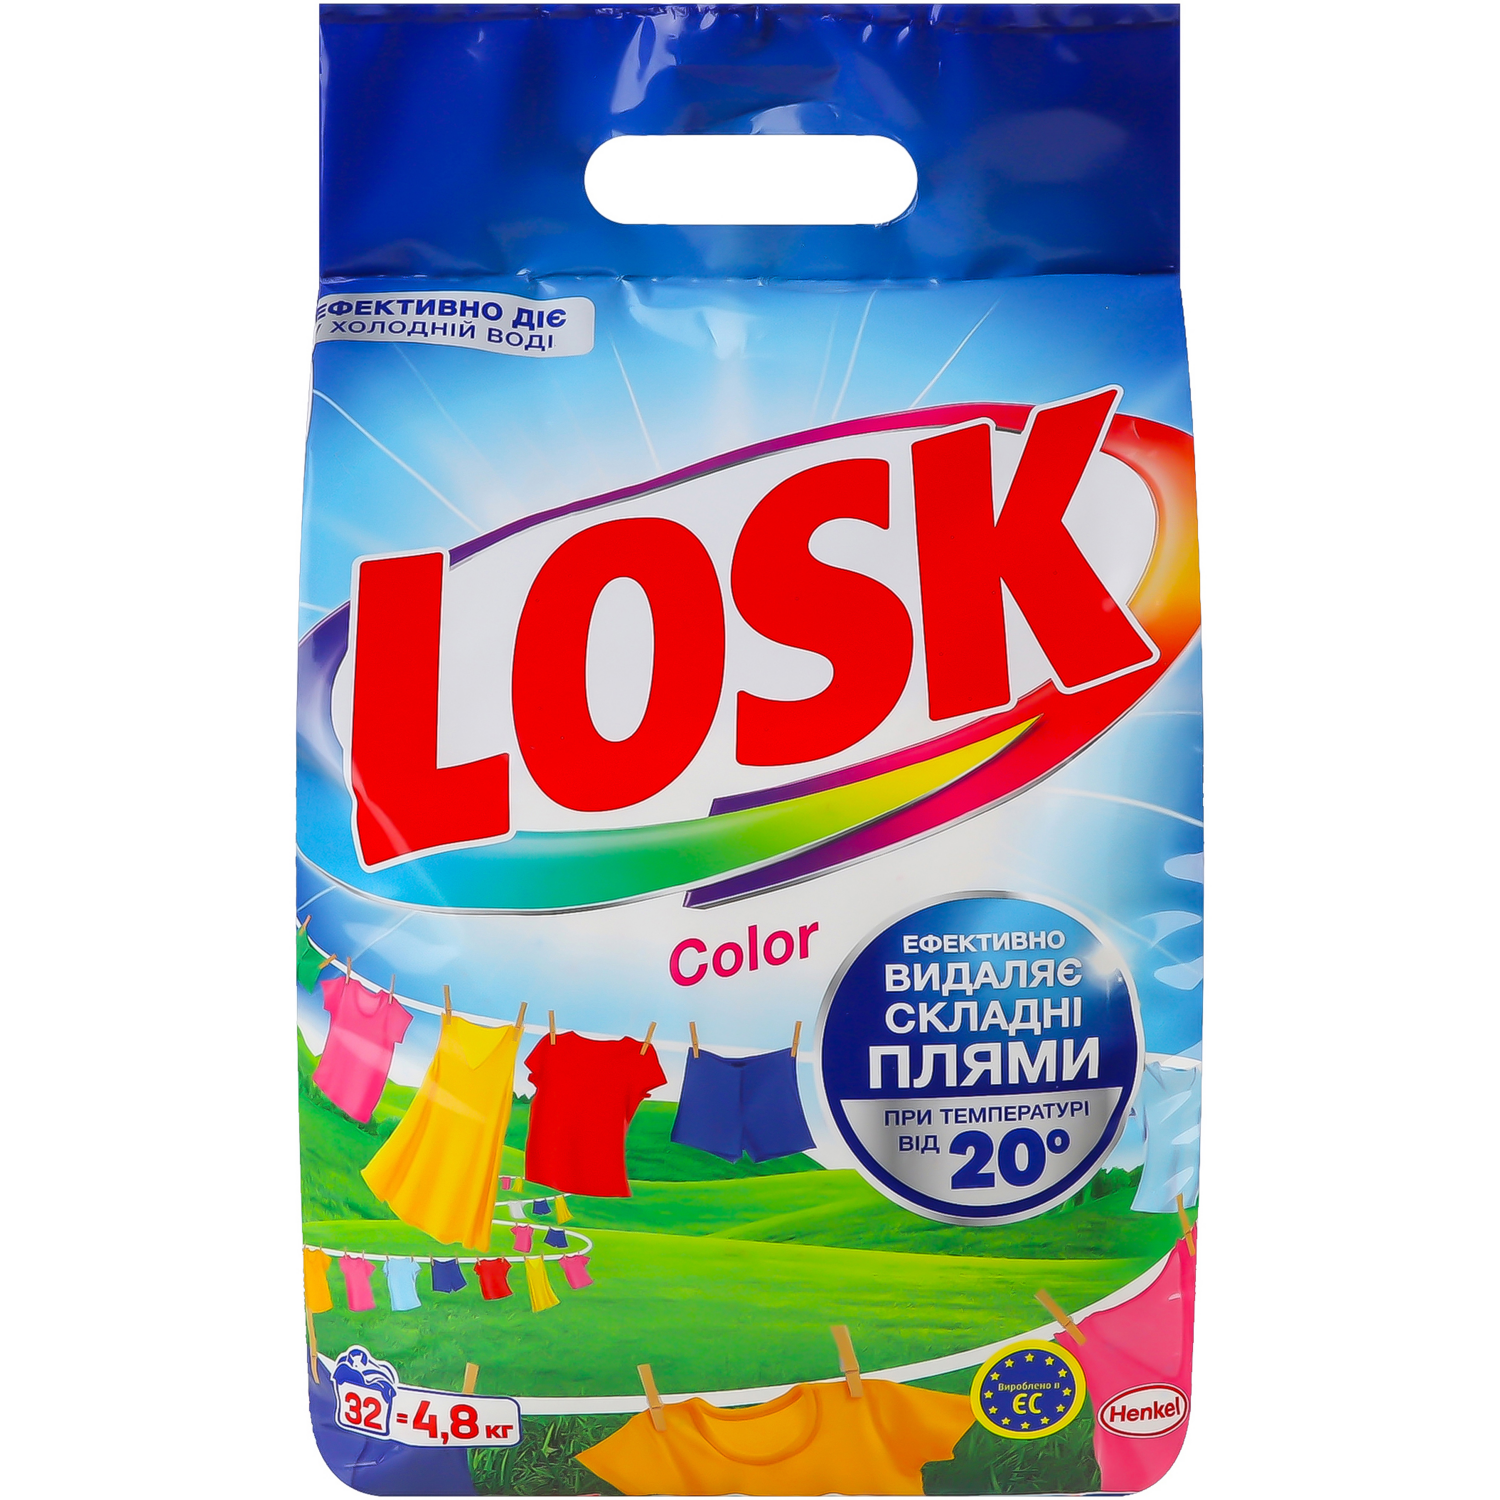 Стиральный порошок Losk Color Автомат 4.8кг фото 